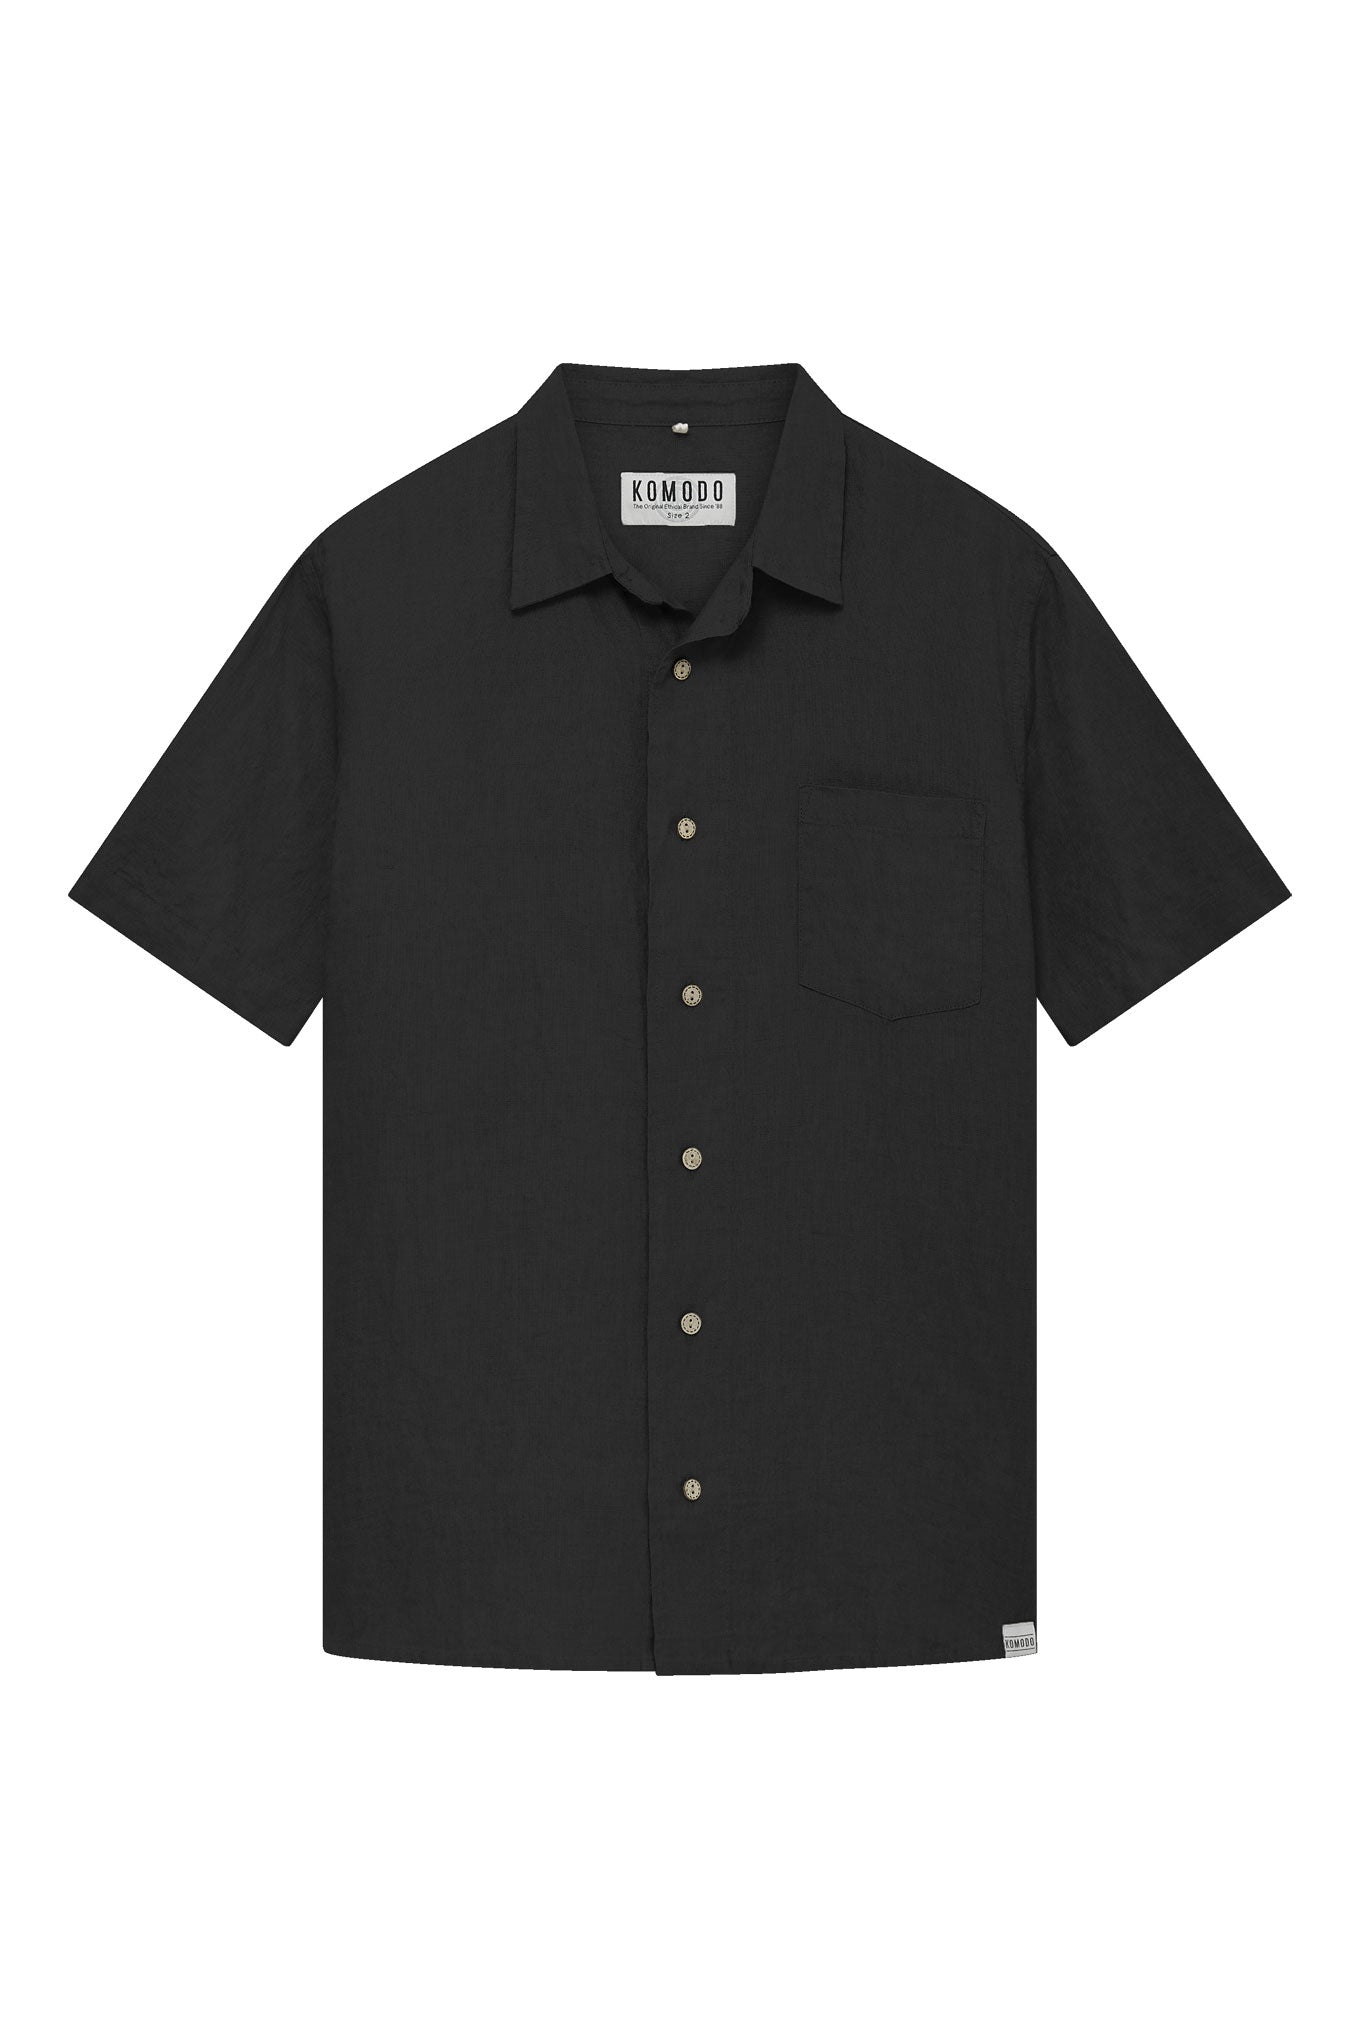 Komodo Men's Dingwalls - Linen Shirt Black